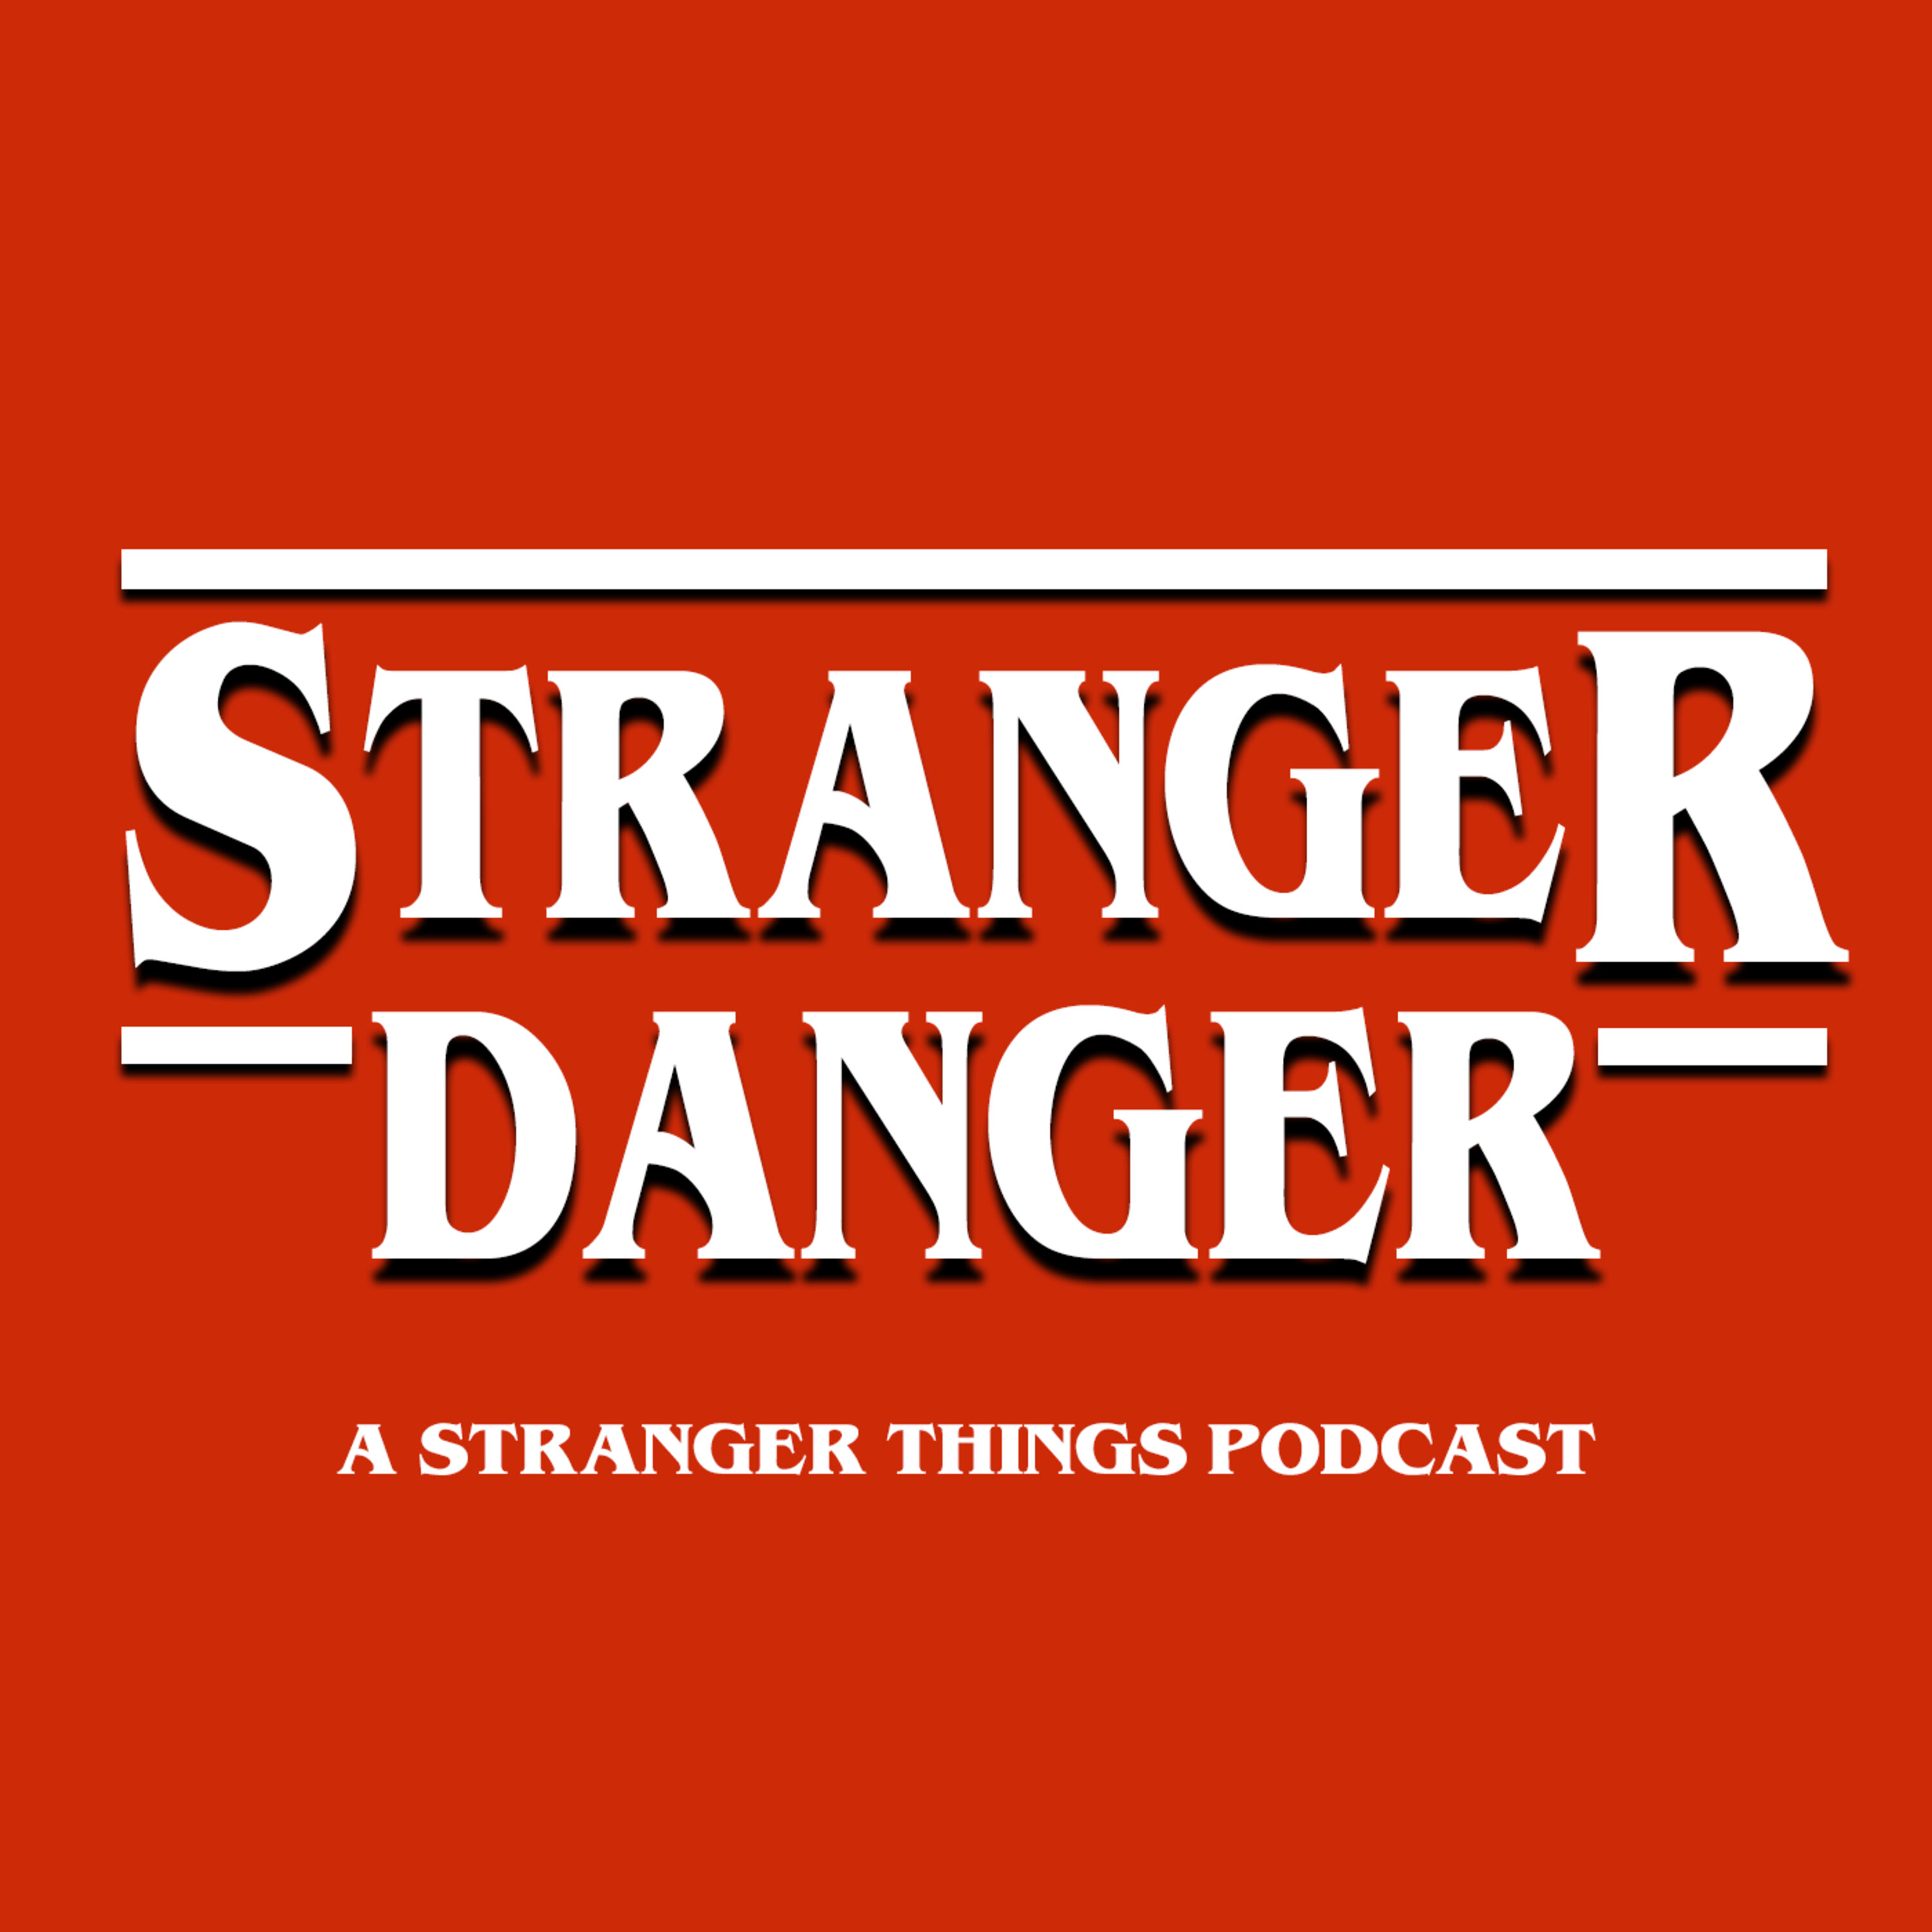 Welcome to Stranger Danger - A Stranger Things Podcast!